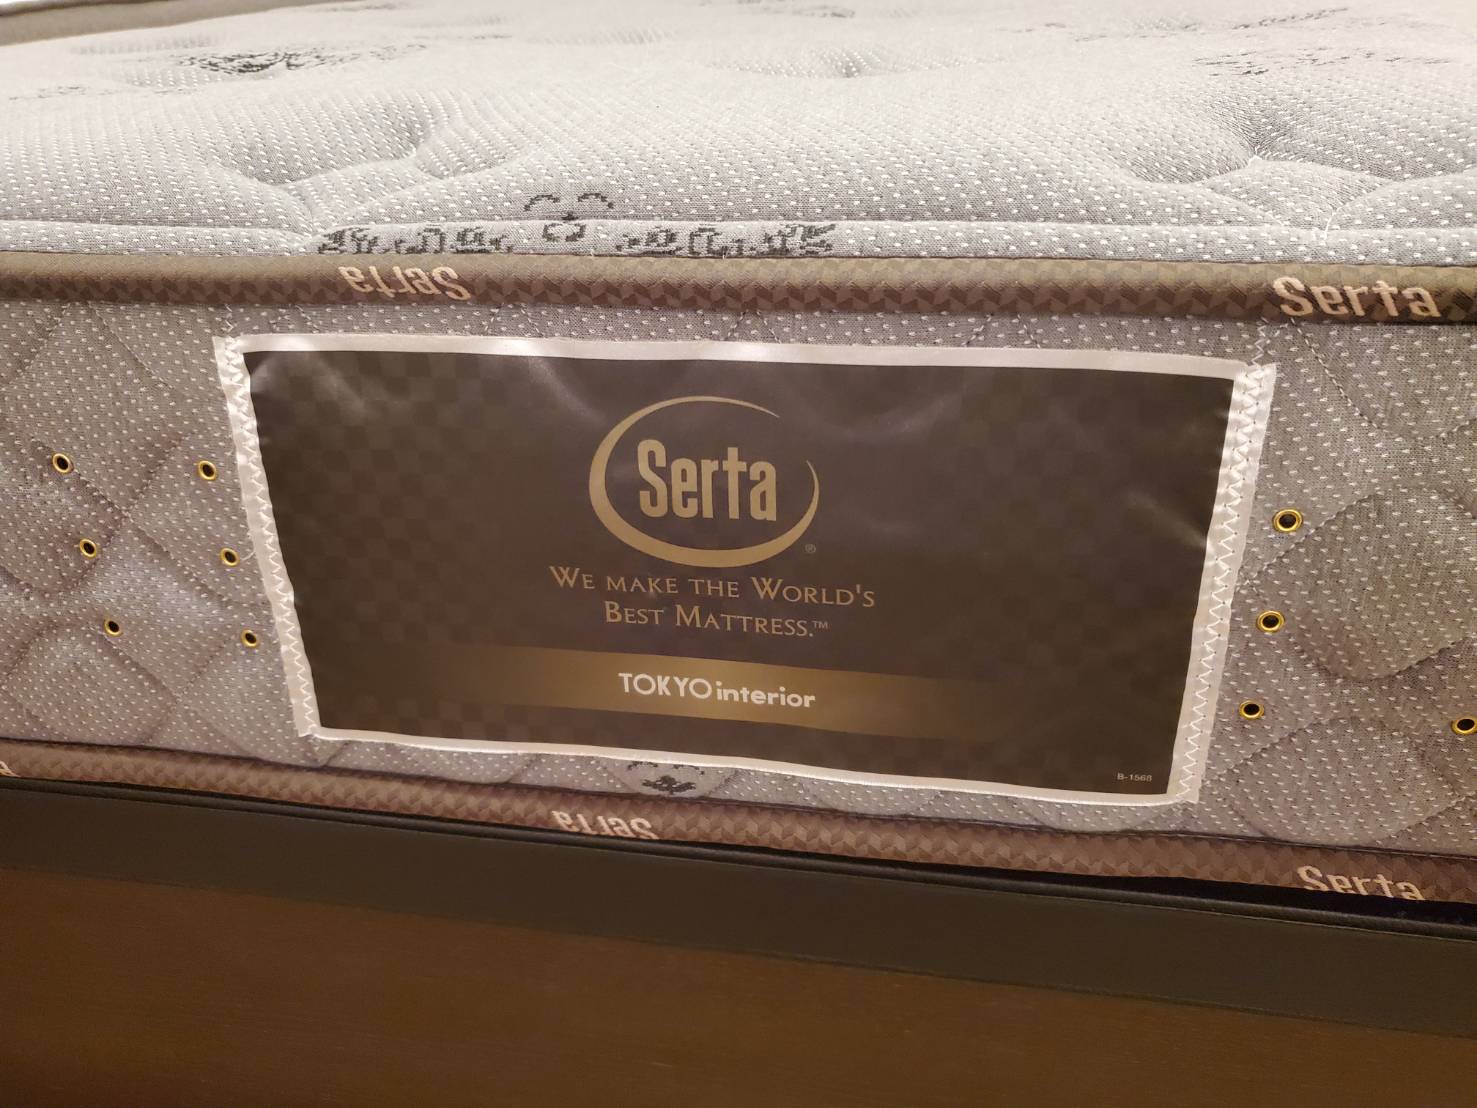 Dream Bed ドリームベッド Serta サータ 跳ね上げ式 セミダブルベッド Tokyointerior 東京インテリア セミダブルサイズ ベッド 買取しました 愛知と岐阜のリサイクルショップ 再良市場